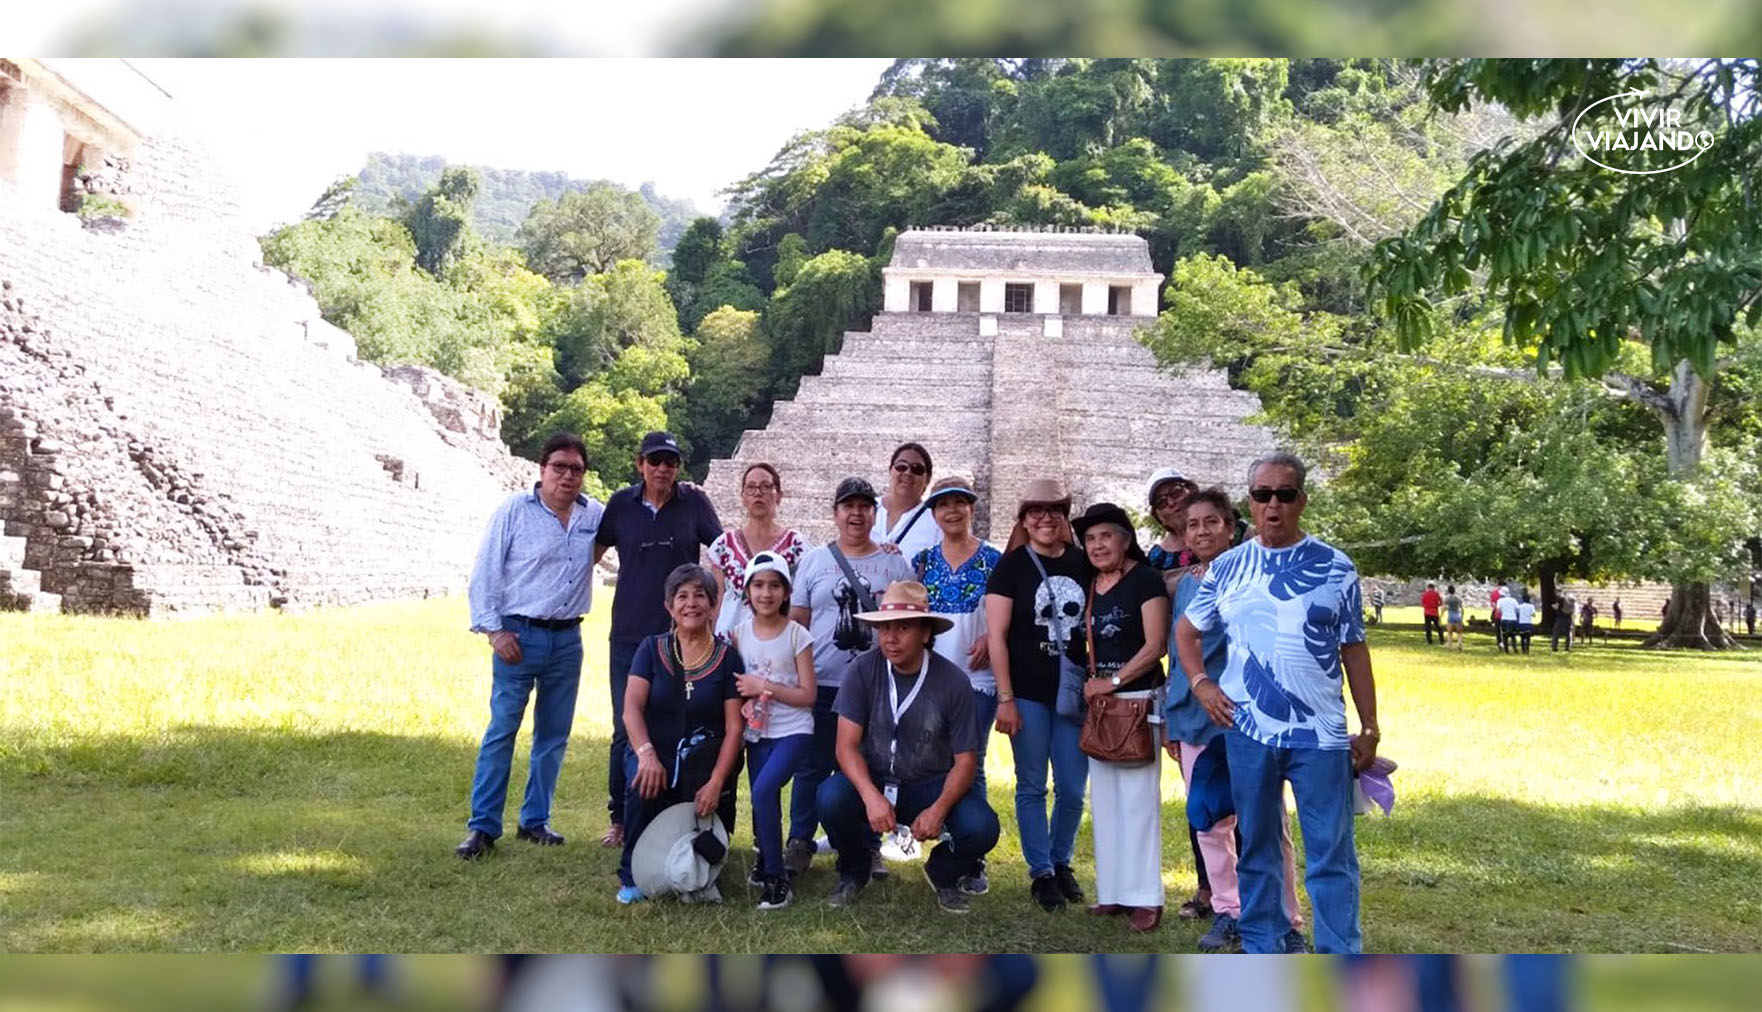 Asombroso Oaxaca con Chiapas Vive la Guelaguetza